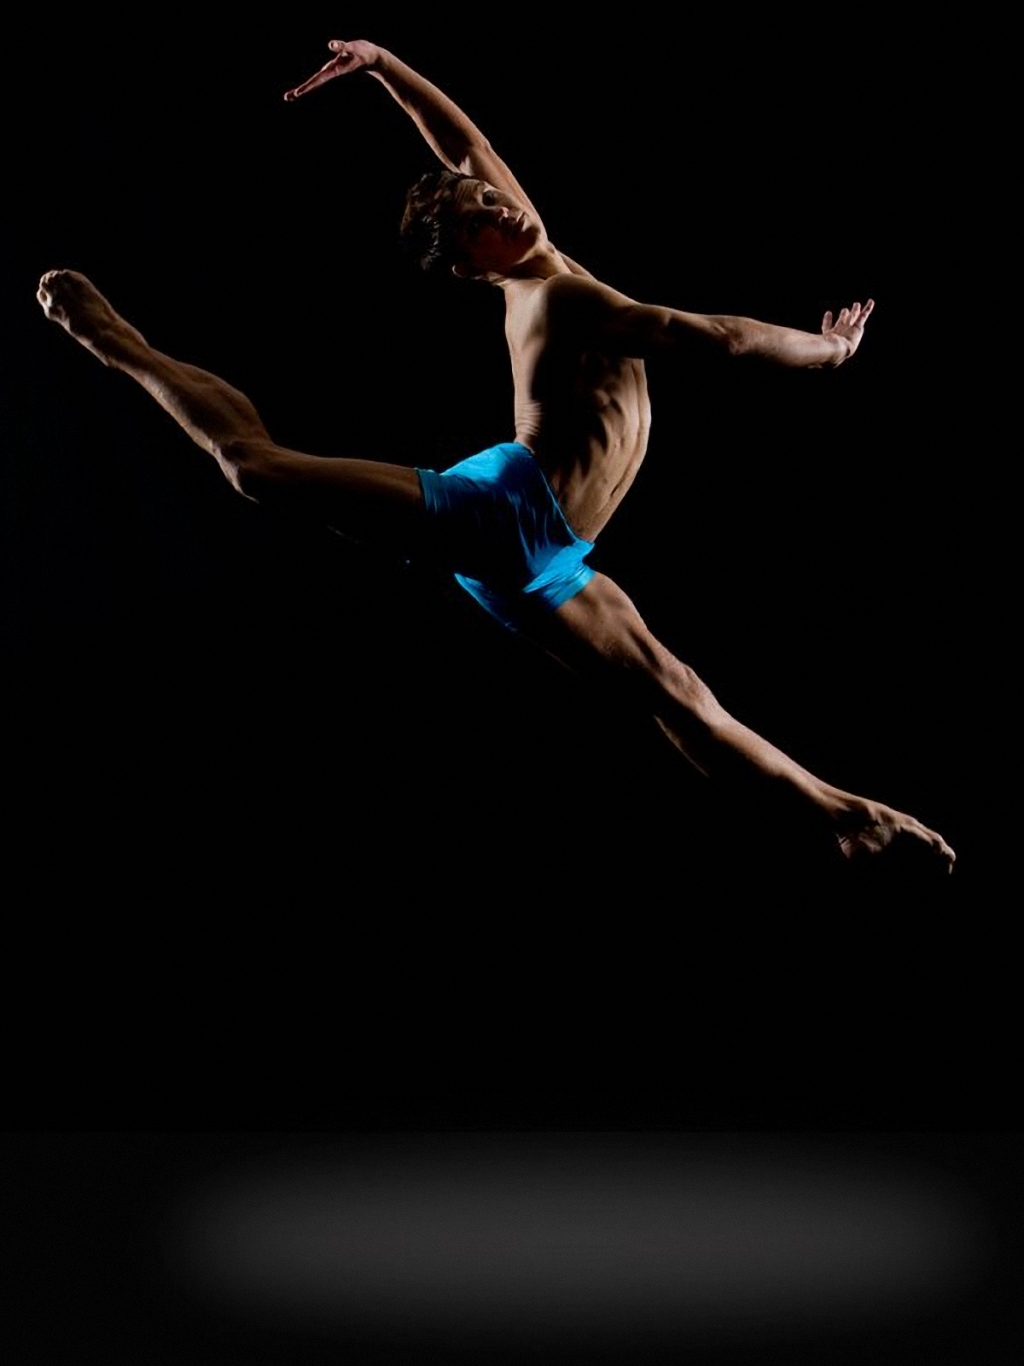 Прыжок в балете сканворд. Ричарда Калмса (Richard calmes. Прыжок в шпагат. Балетные прыжки.